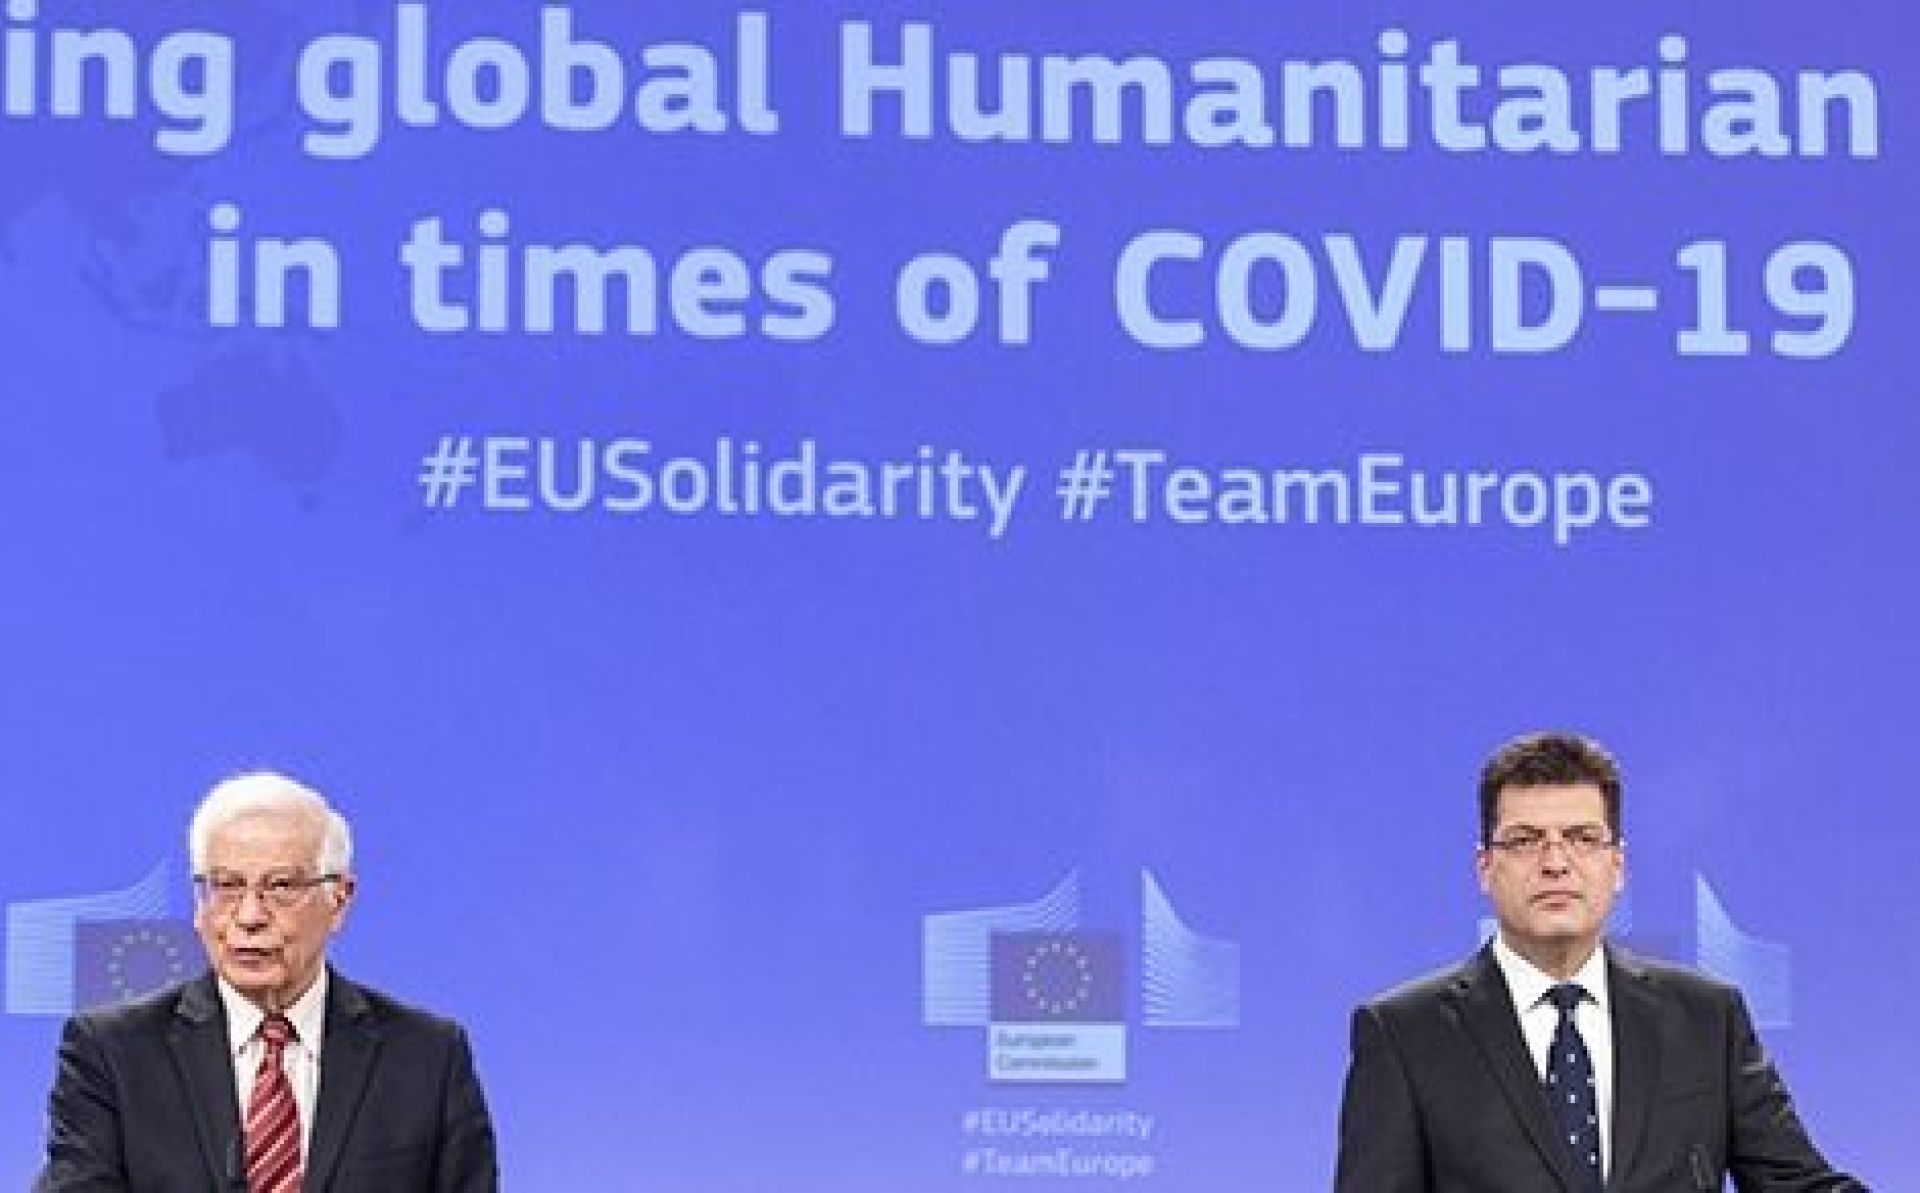 ЕС представил новую концепцию оказания гуманитарной помощи во время пандемии COVID-19